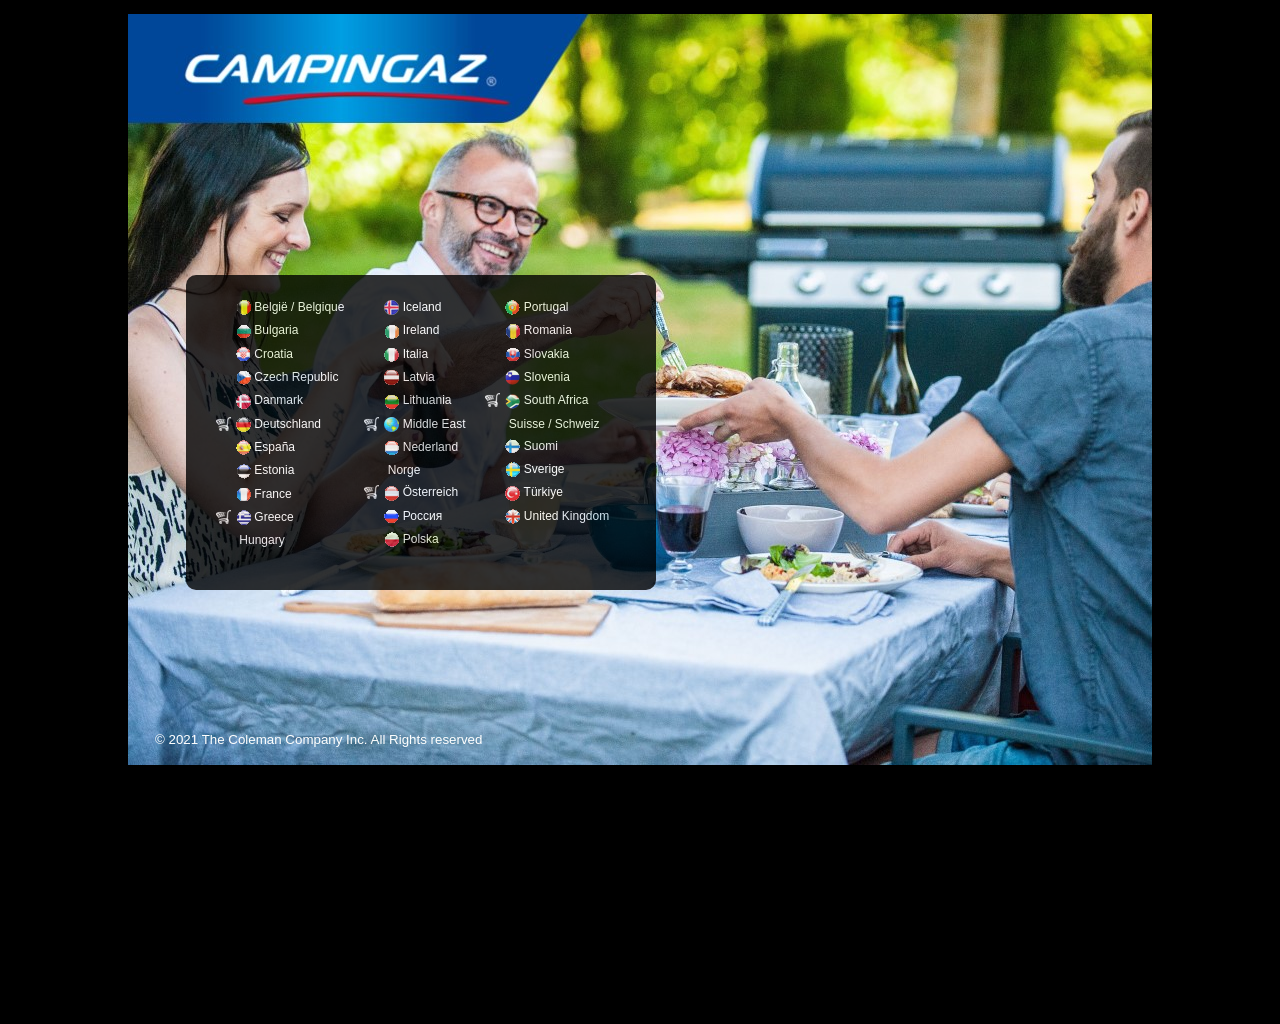 www.campingaz.com